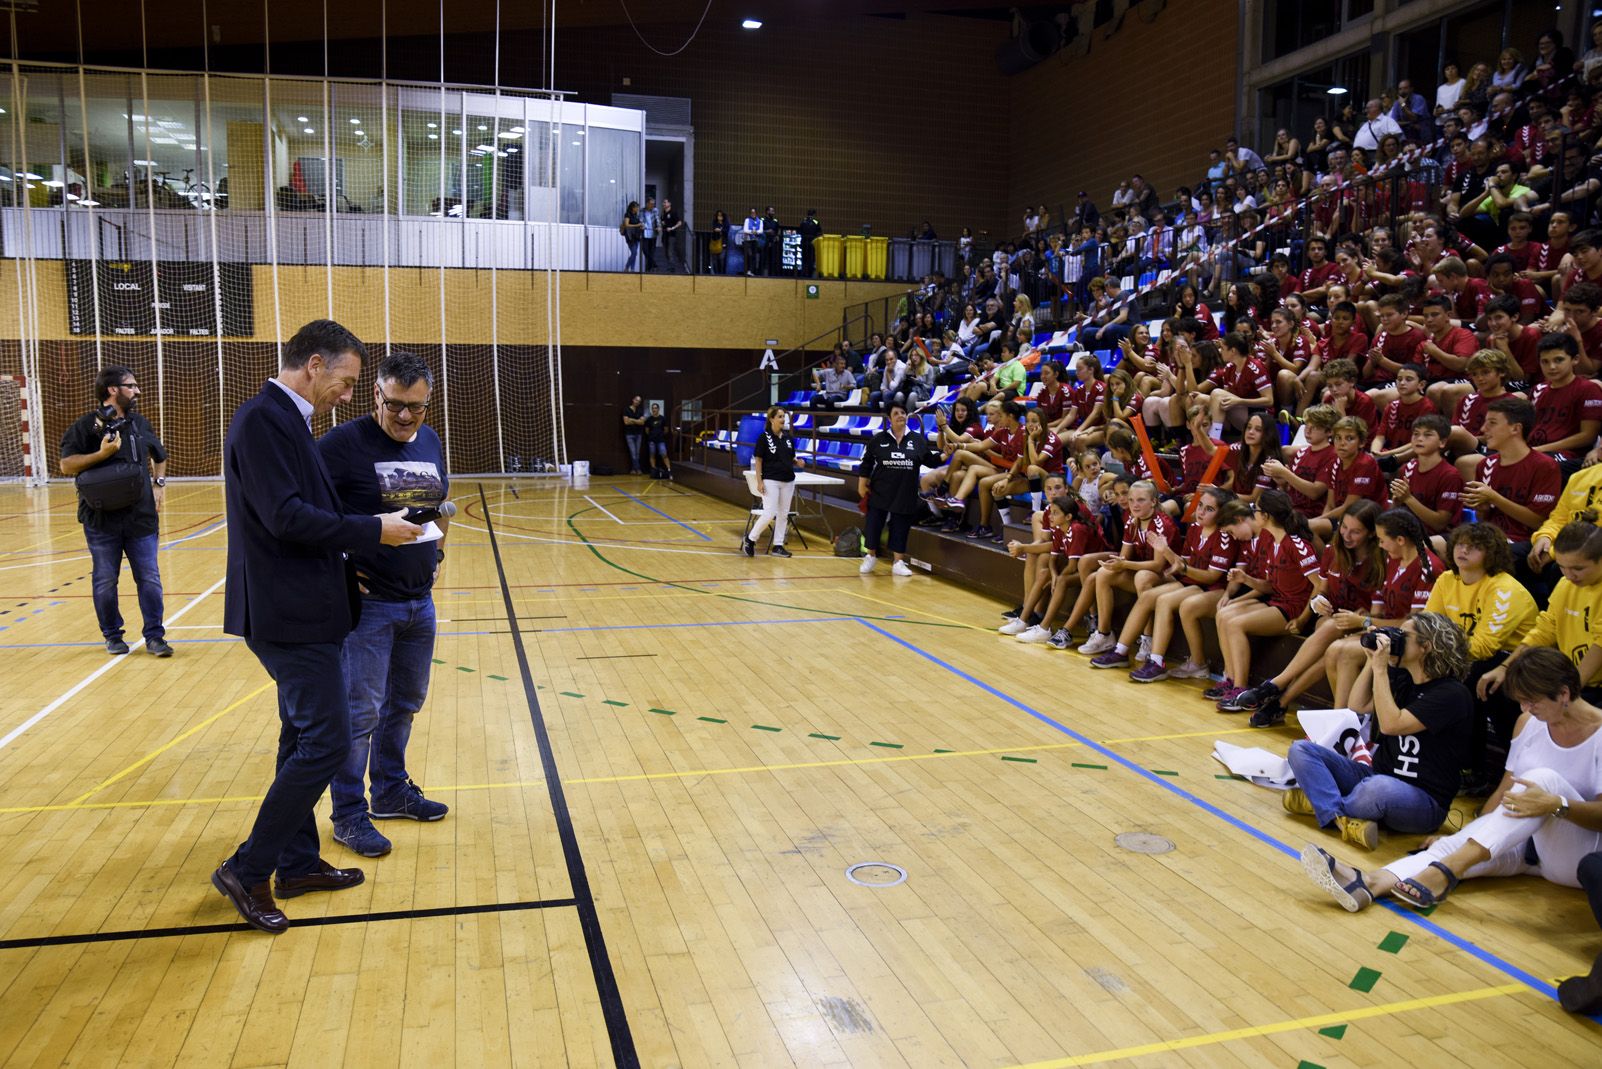 Presentació dels equips del ClubHandbol Sant Cugat. Foto: Bernat Millet.